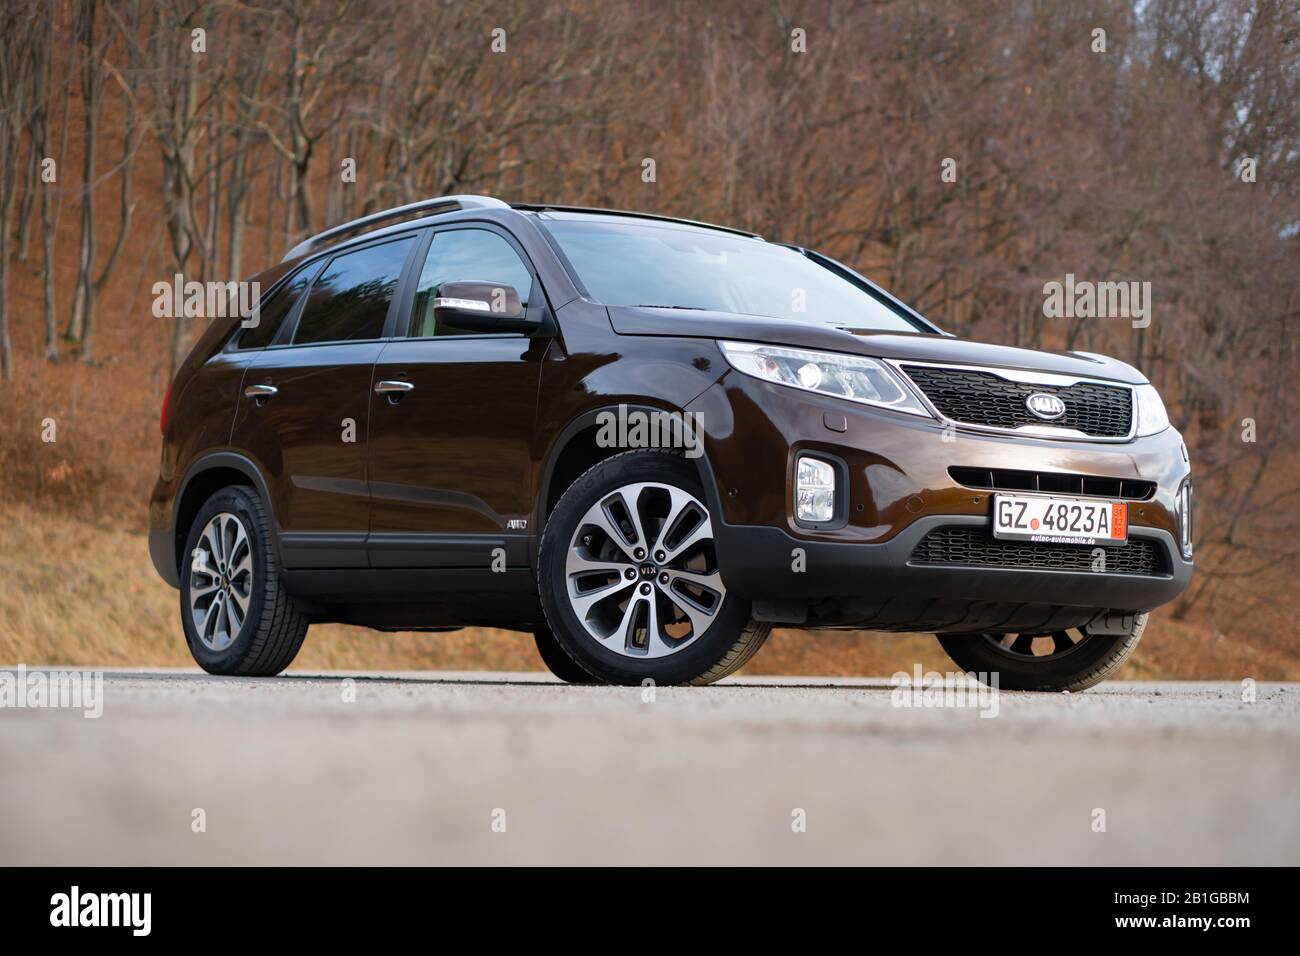 Équipement Kia Sorento Platinum, modèle facelift, année 2014, couleur métallique marron moca. 4x4 suv familial isolé dans un parking vide, séance photo Banque D'Images